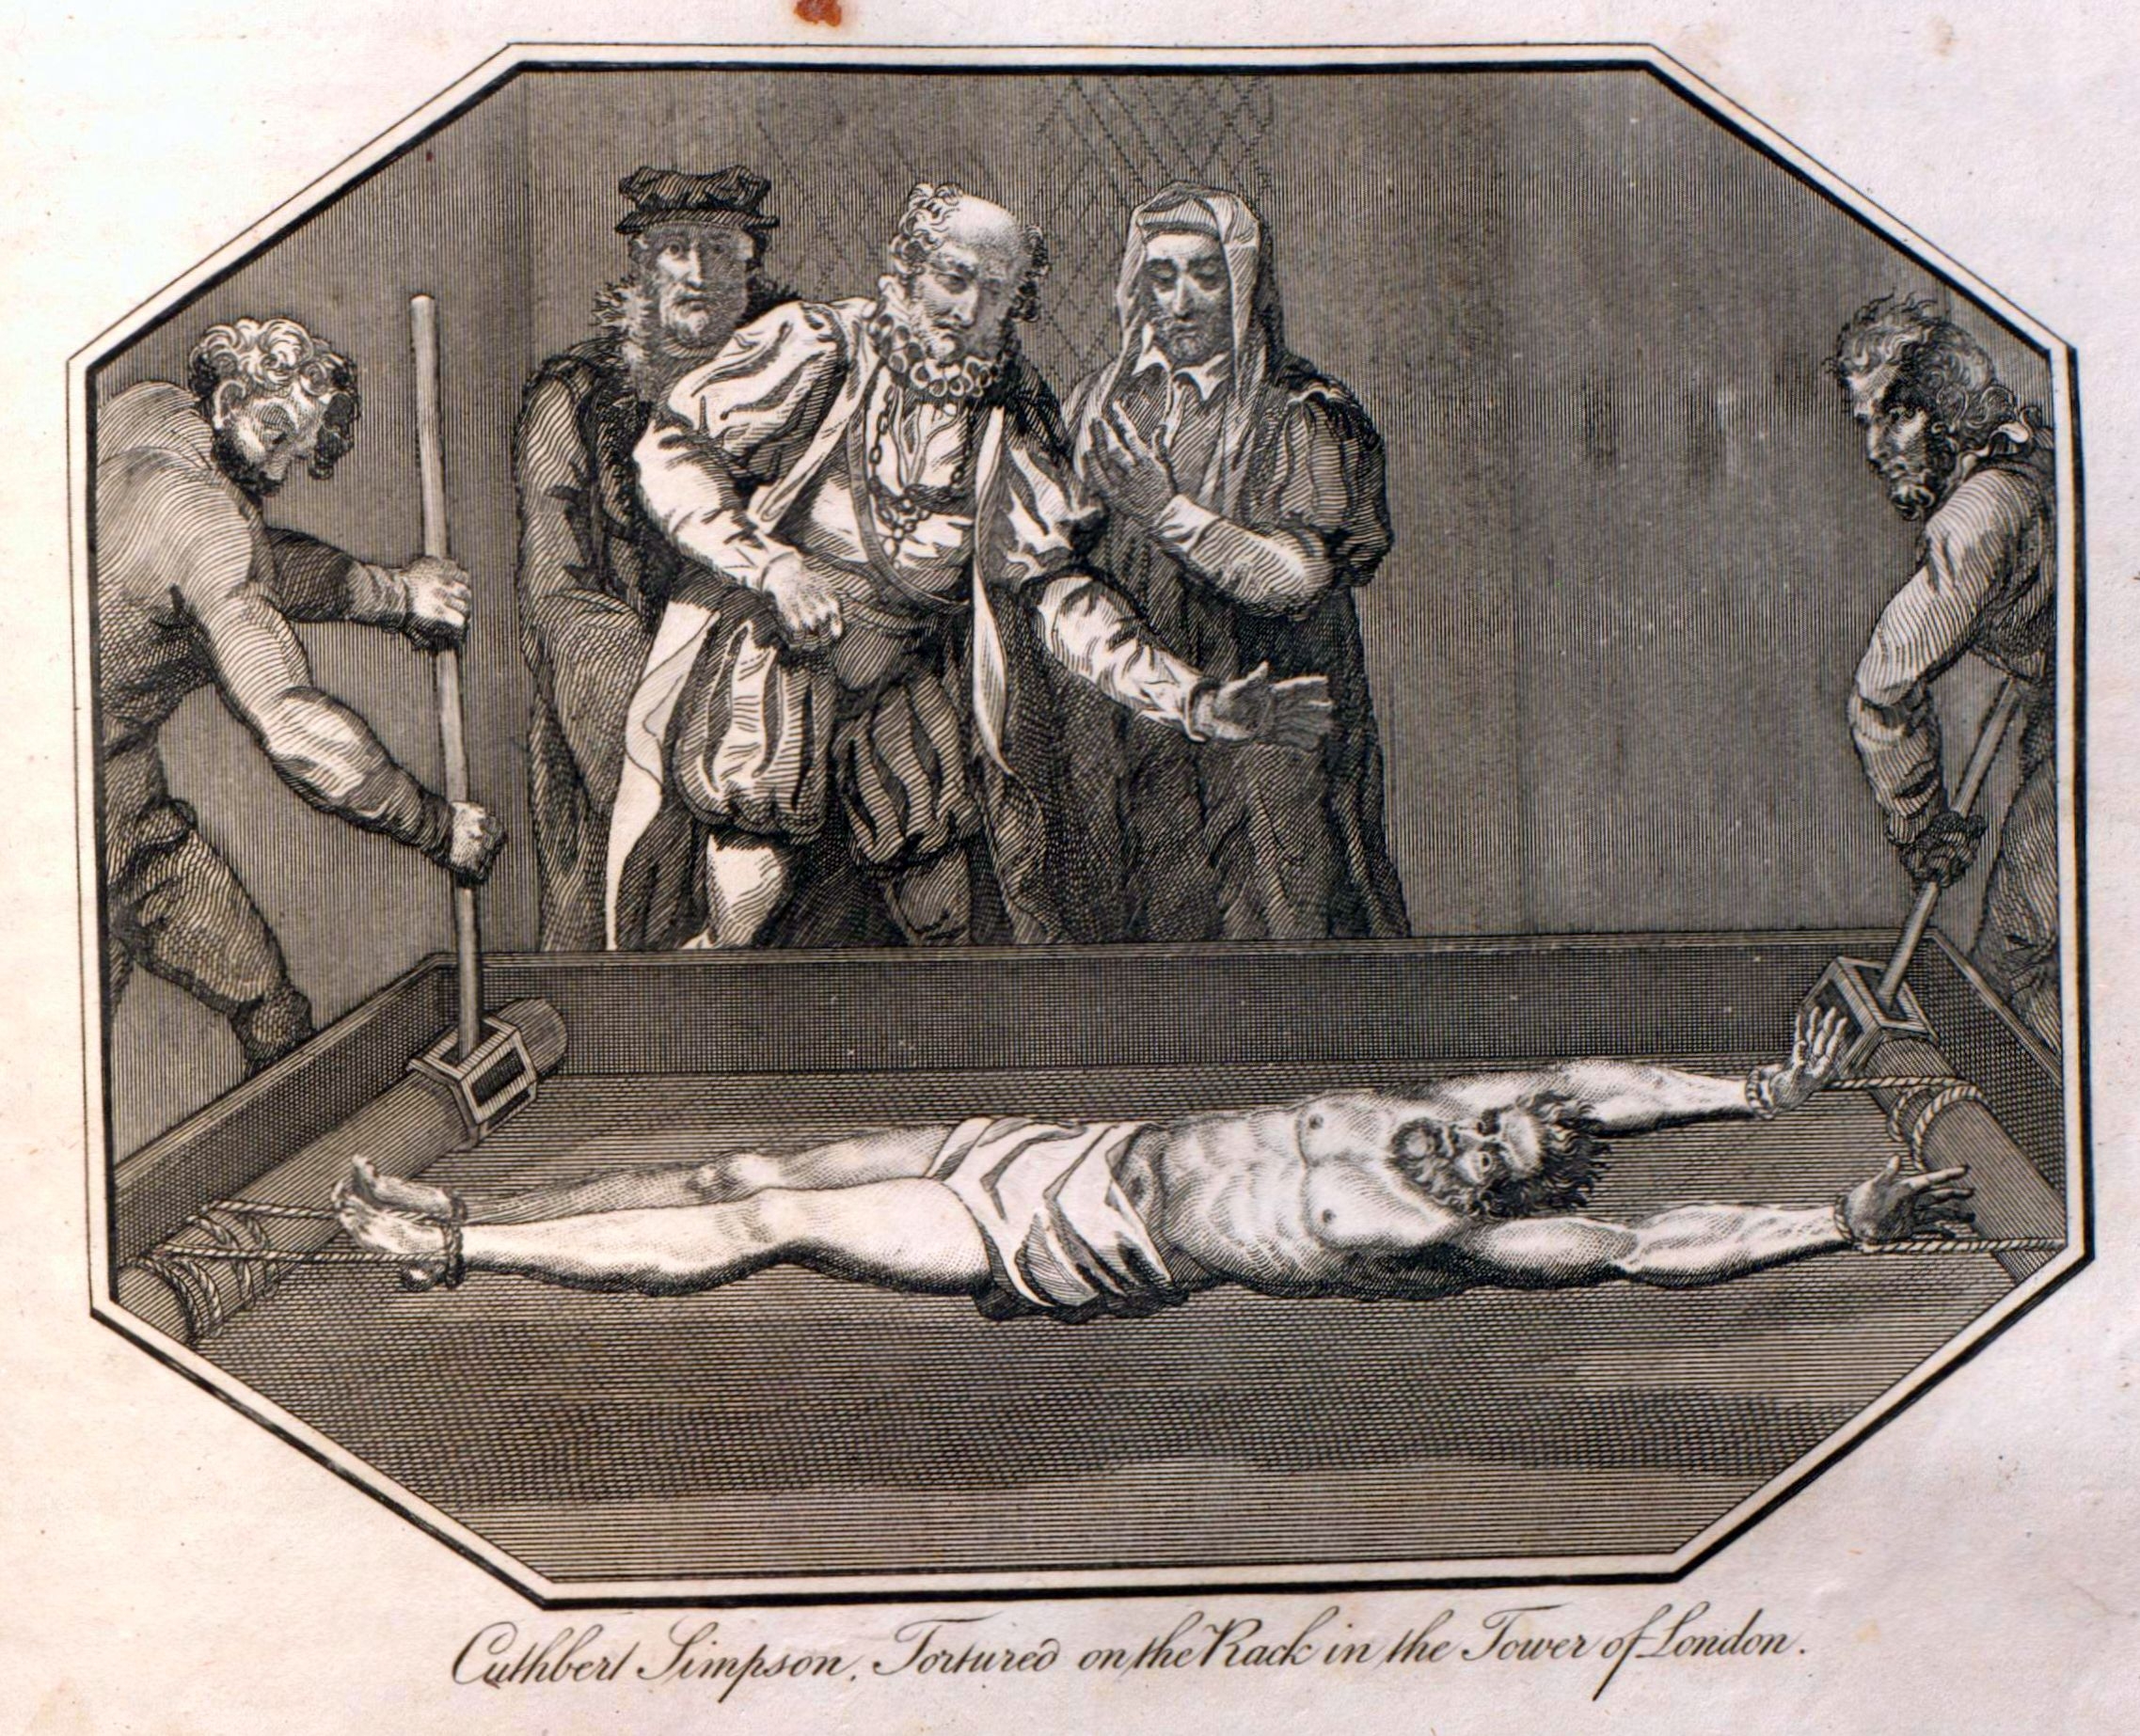 Thomas Le Marchant on torture